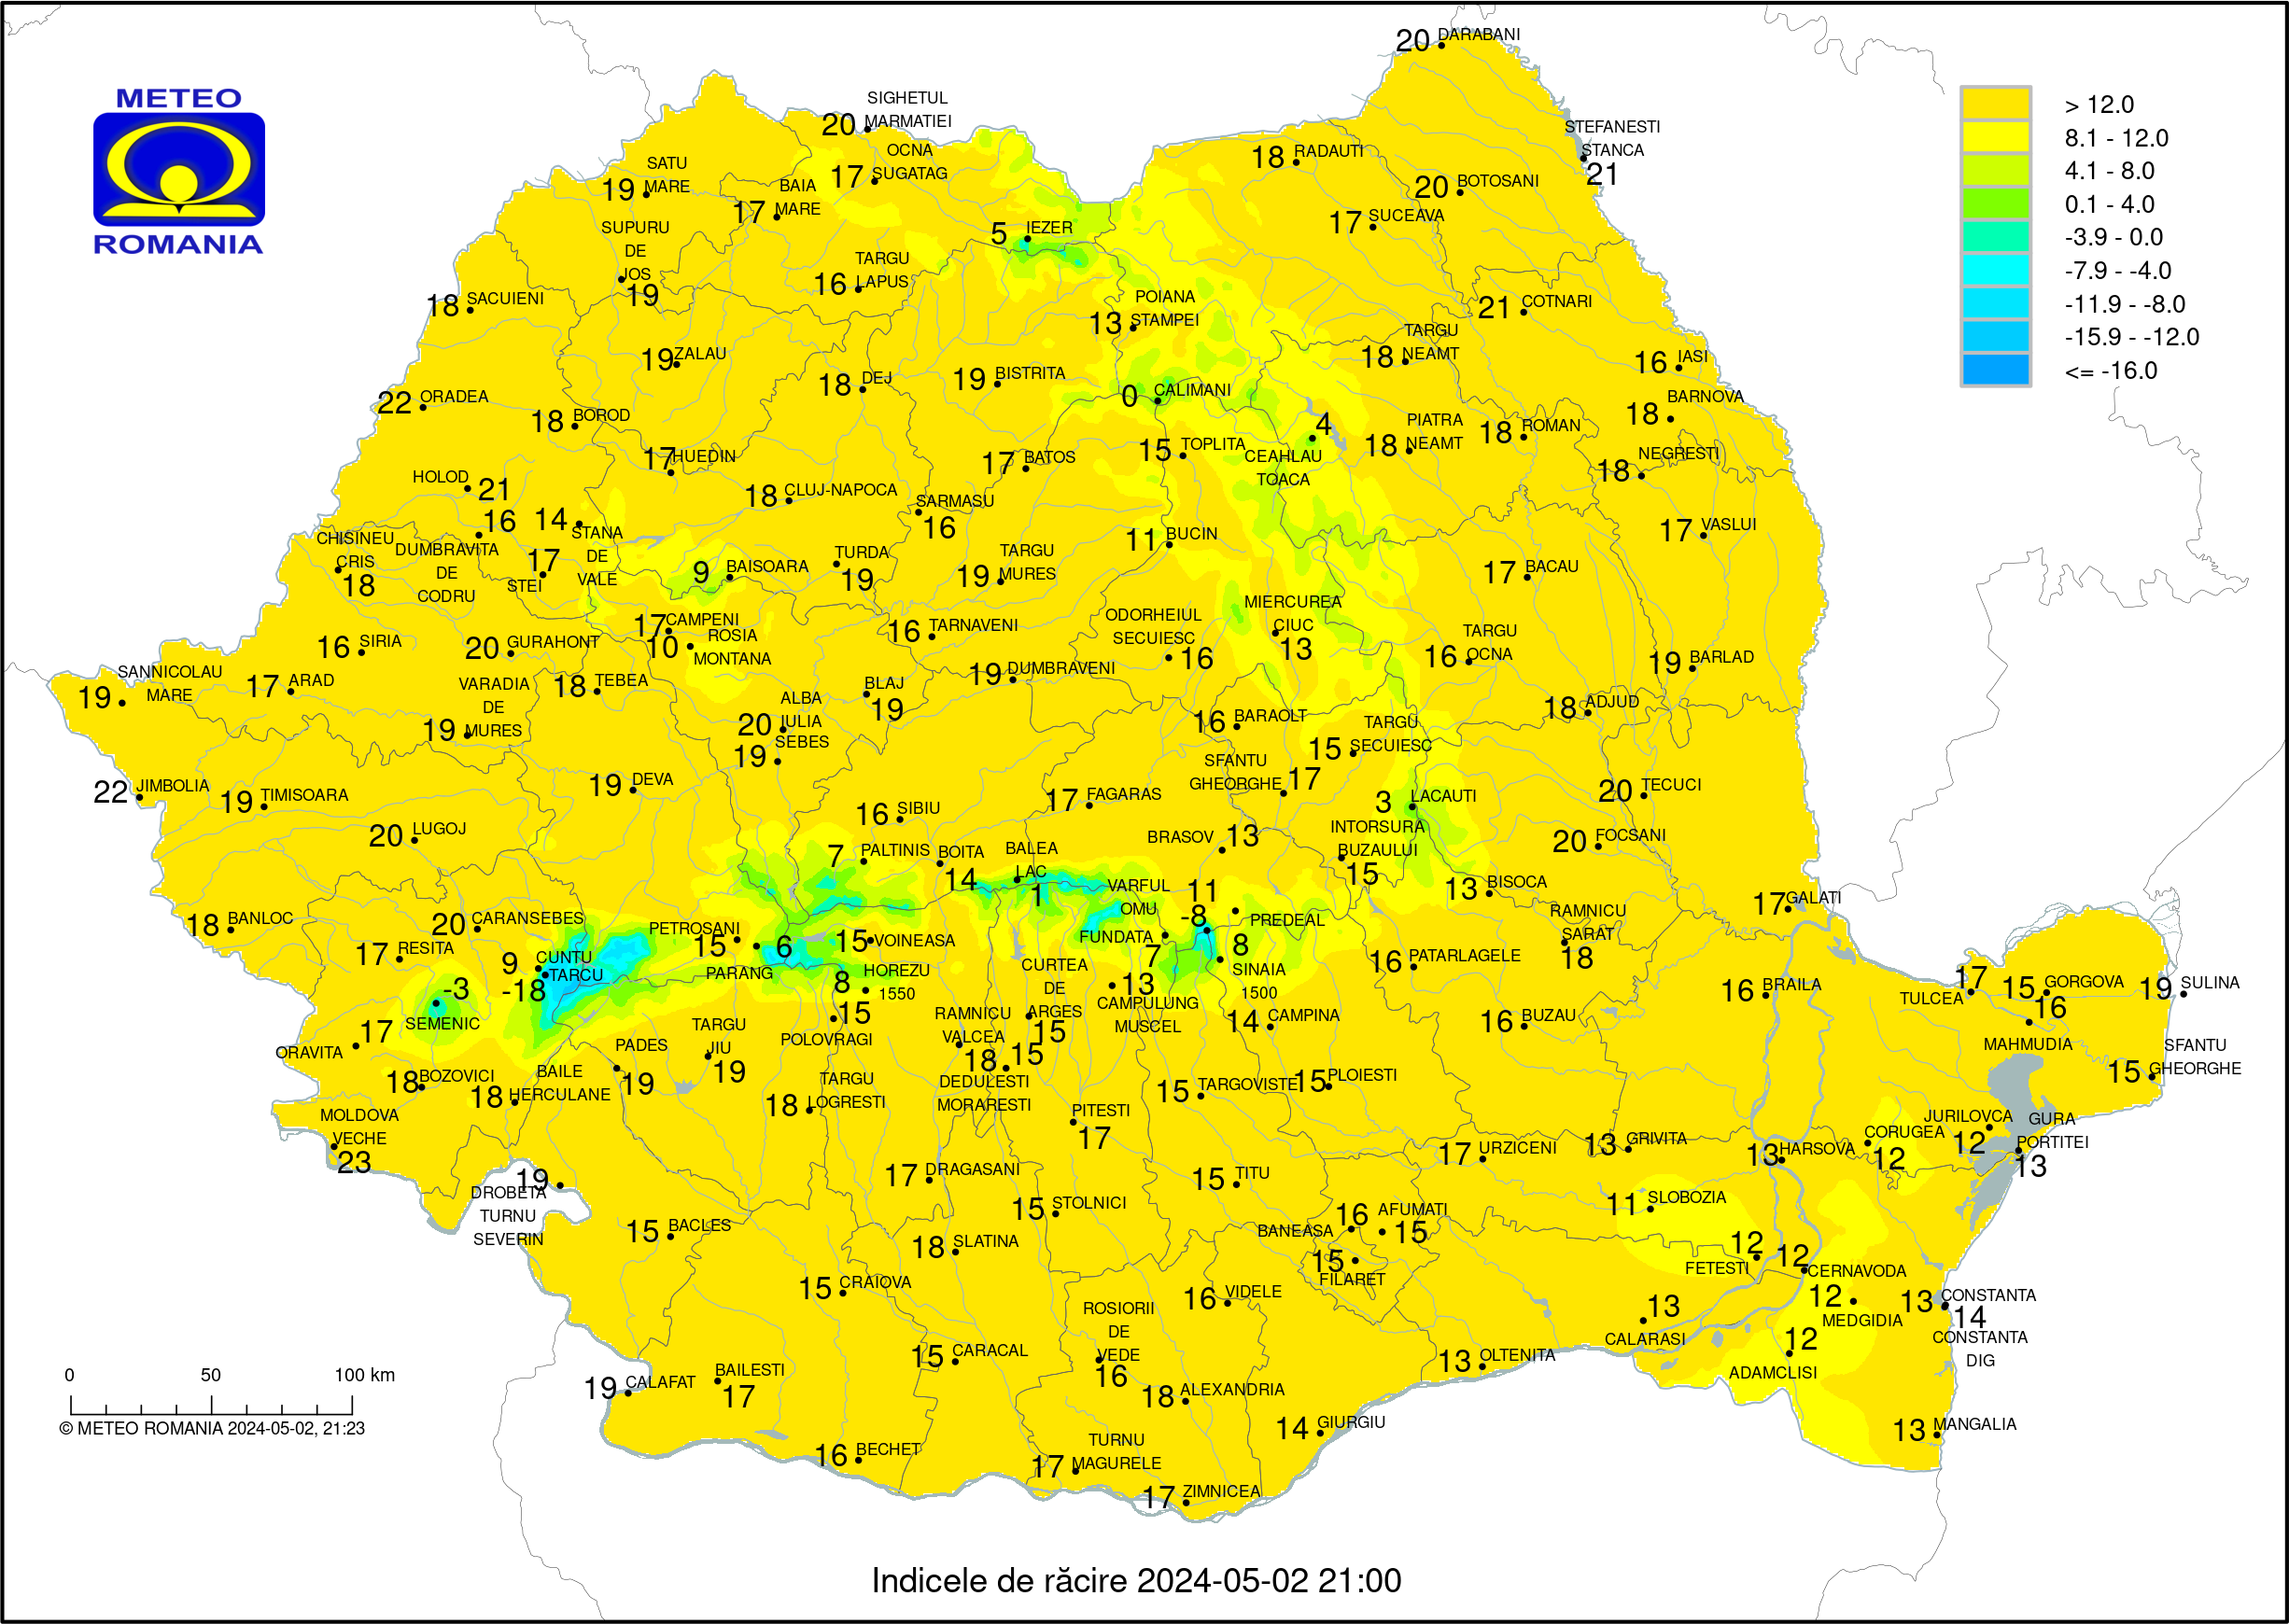 Temperaturi ora 14 #Romania (2 pm o'clock Romania temperature)